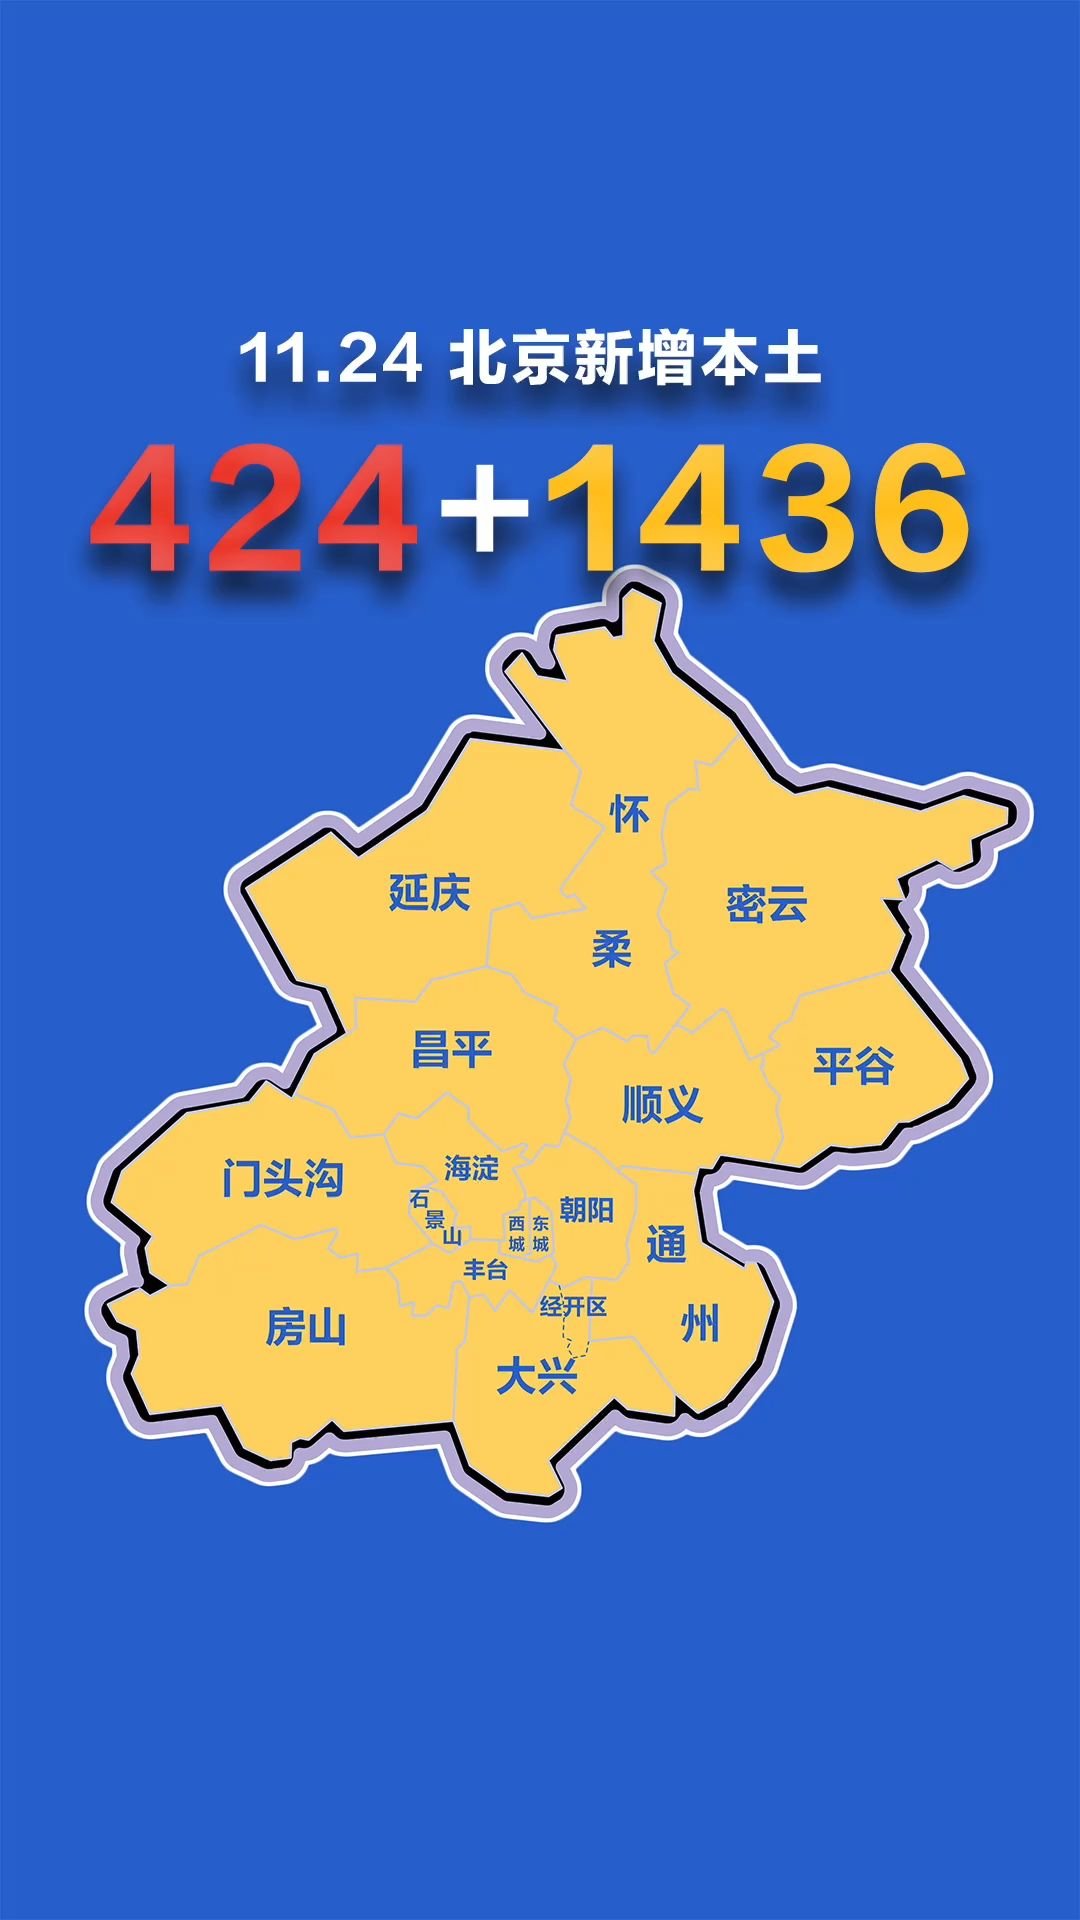 北京疫情动态地图:11月24日新增本土确诊424例,无症状1436例 据北┅